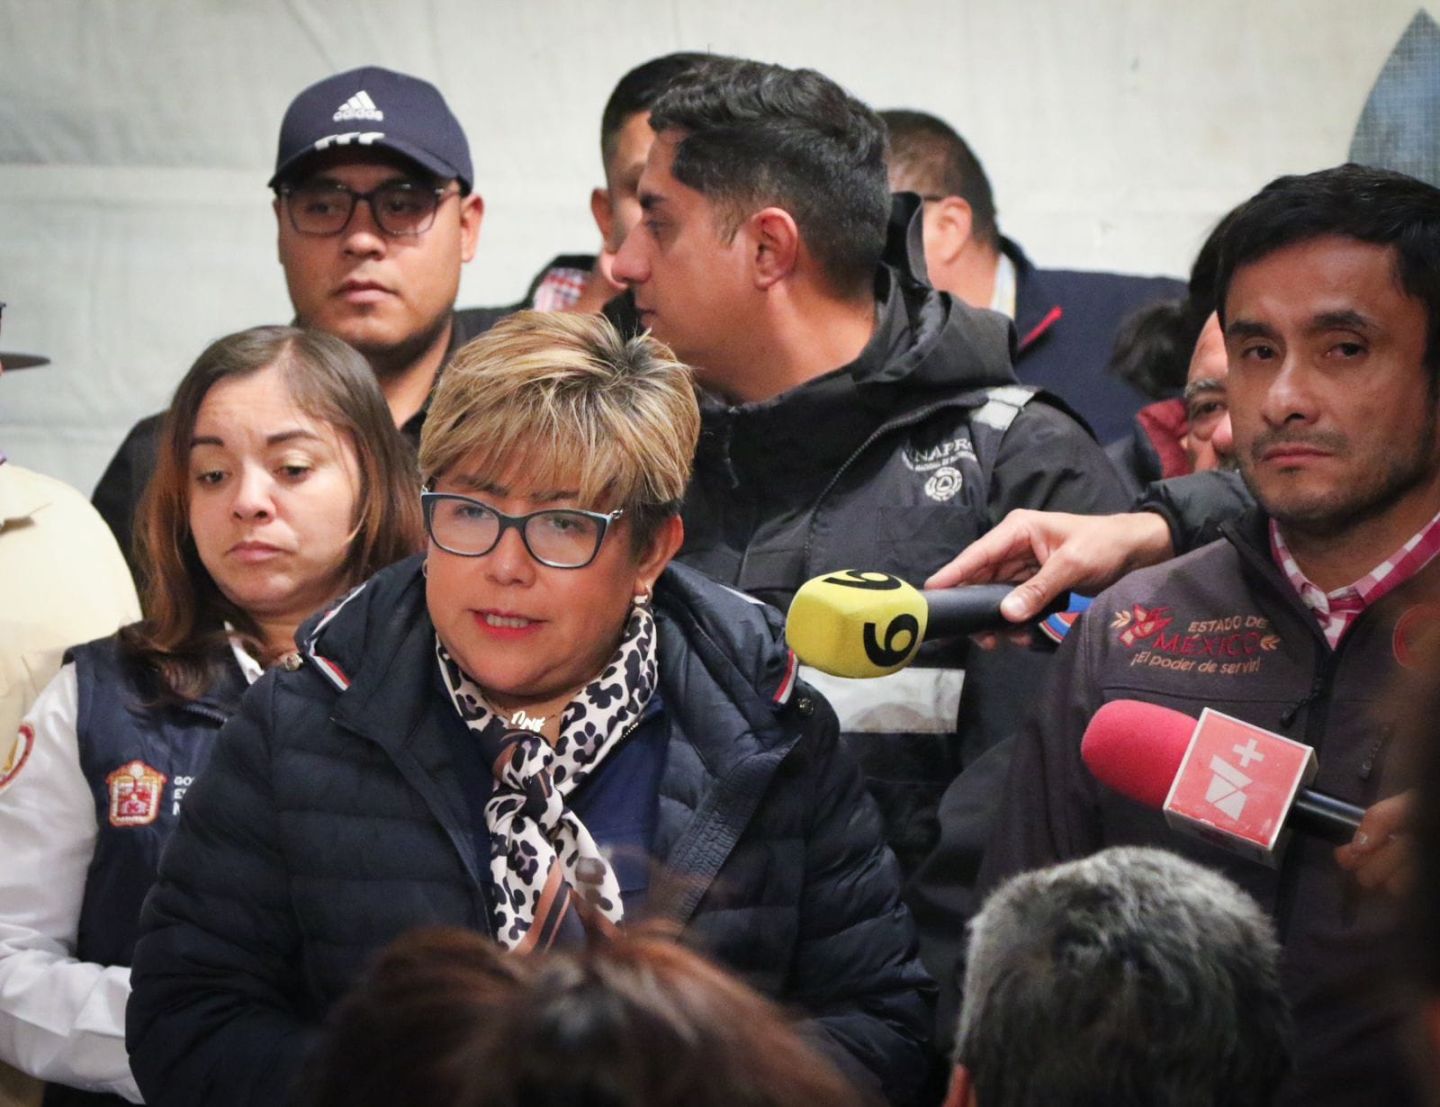 Cristina González Cruz, Presidenta Municipal de La Paz, Apoya
de Manera Directa a los Afectados de la Unidad Tepozanes
